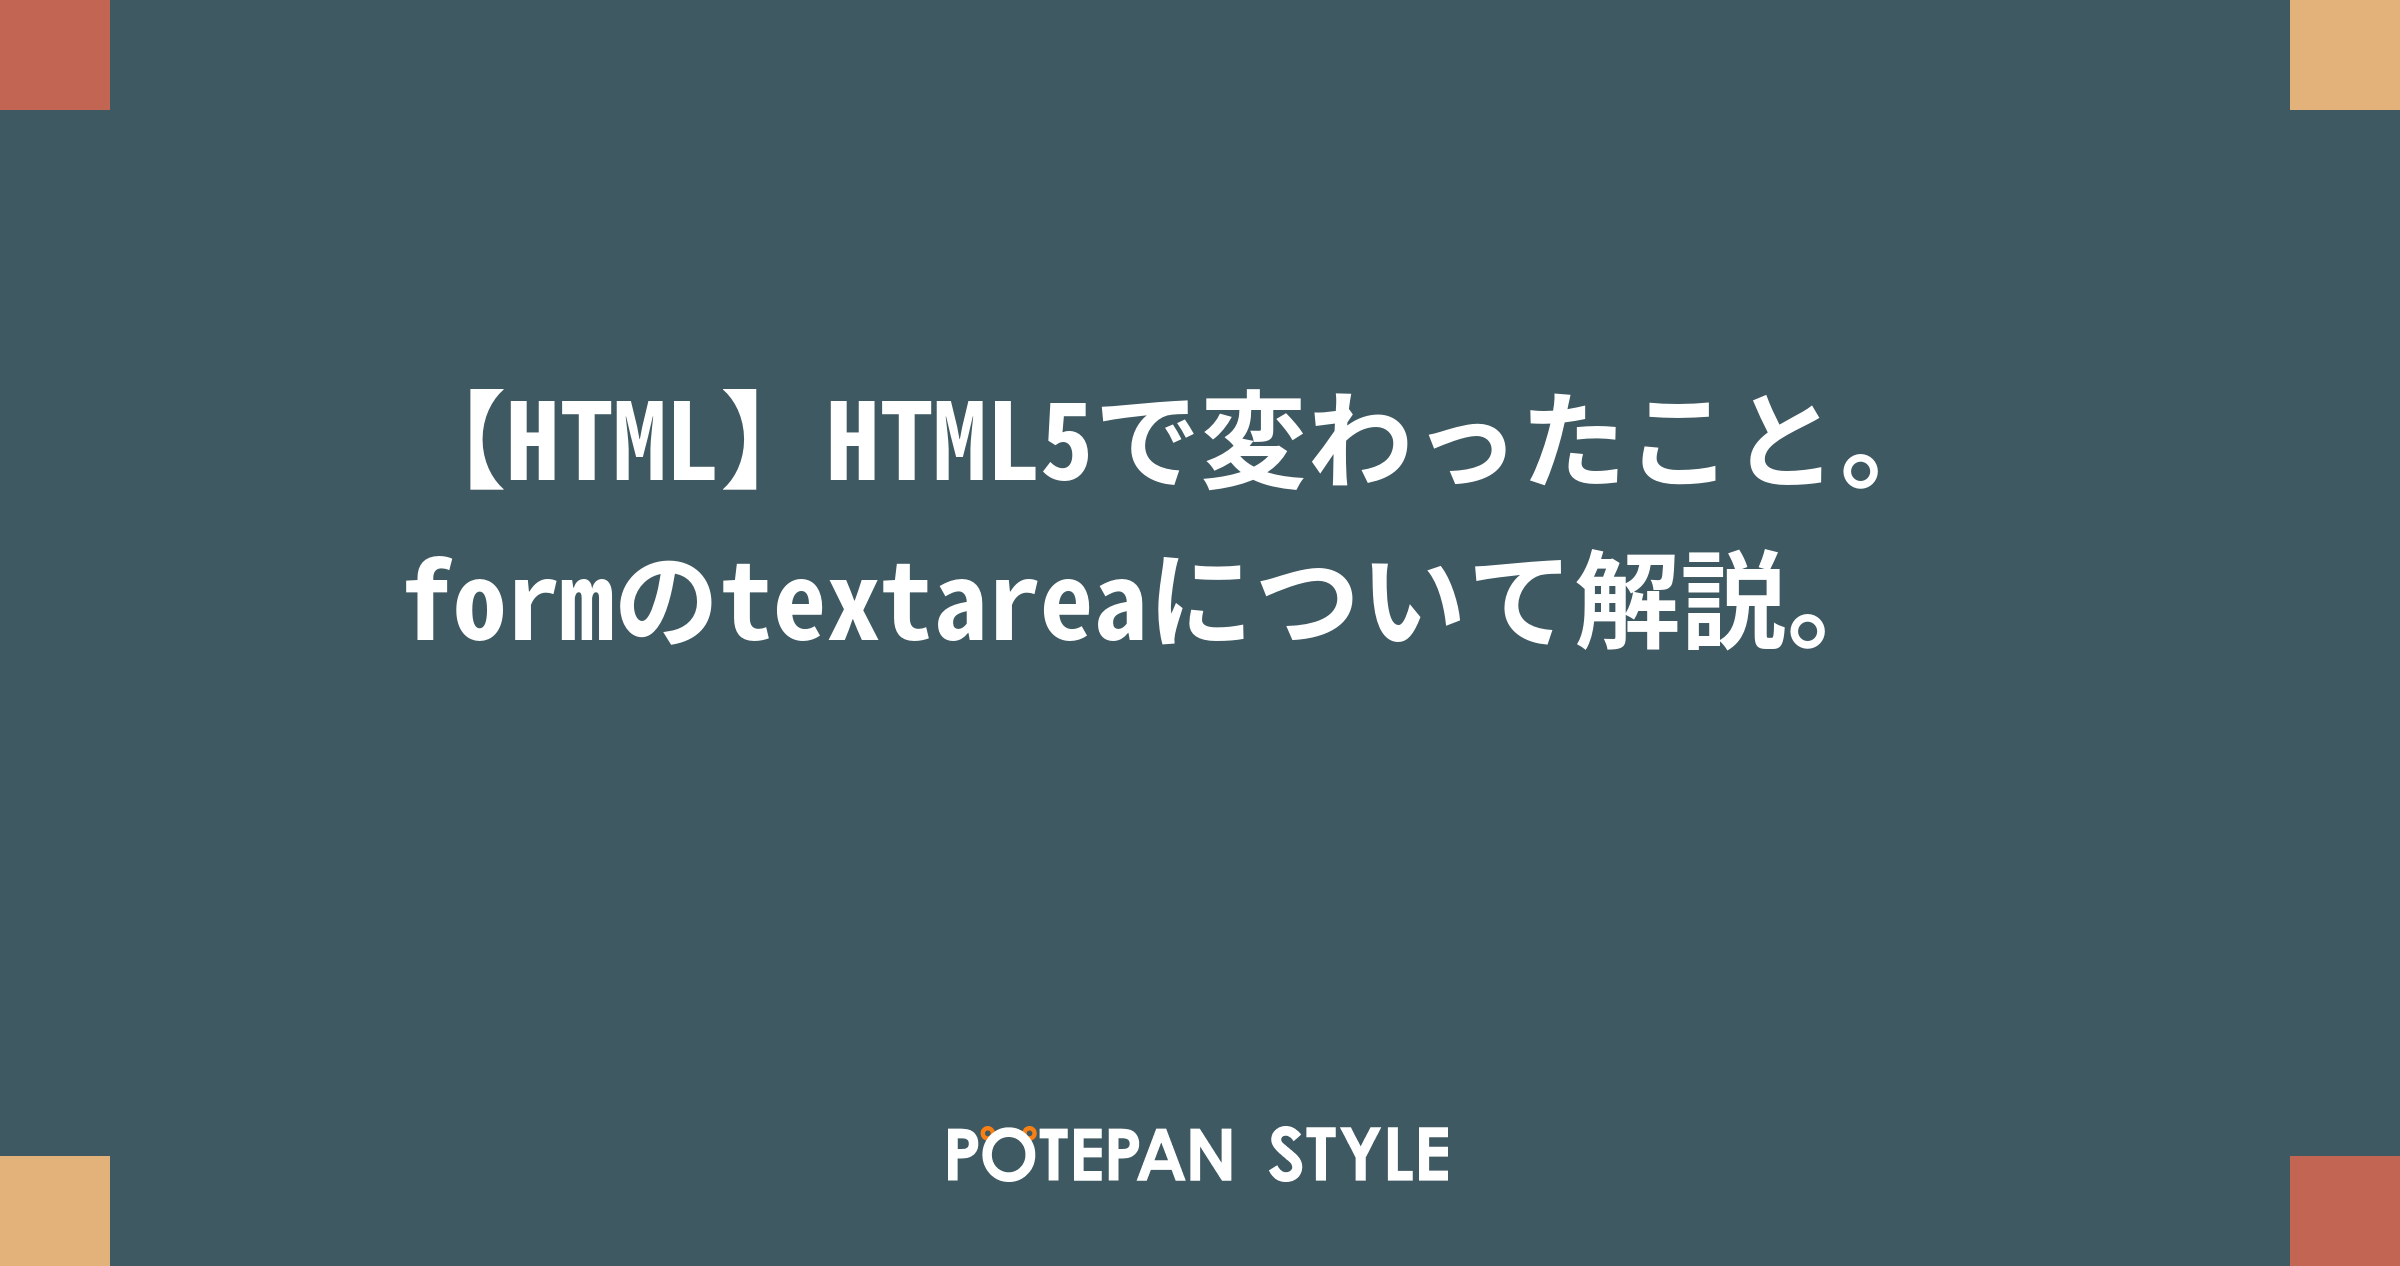 Html Html5で変わったこと Formのtextareaについて解説 ポテパンスタイル